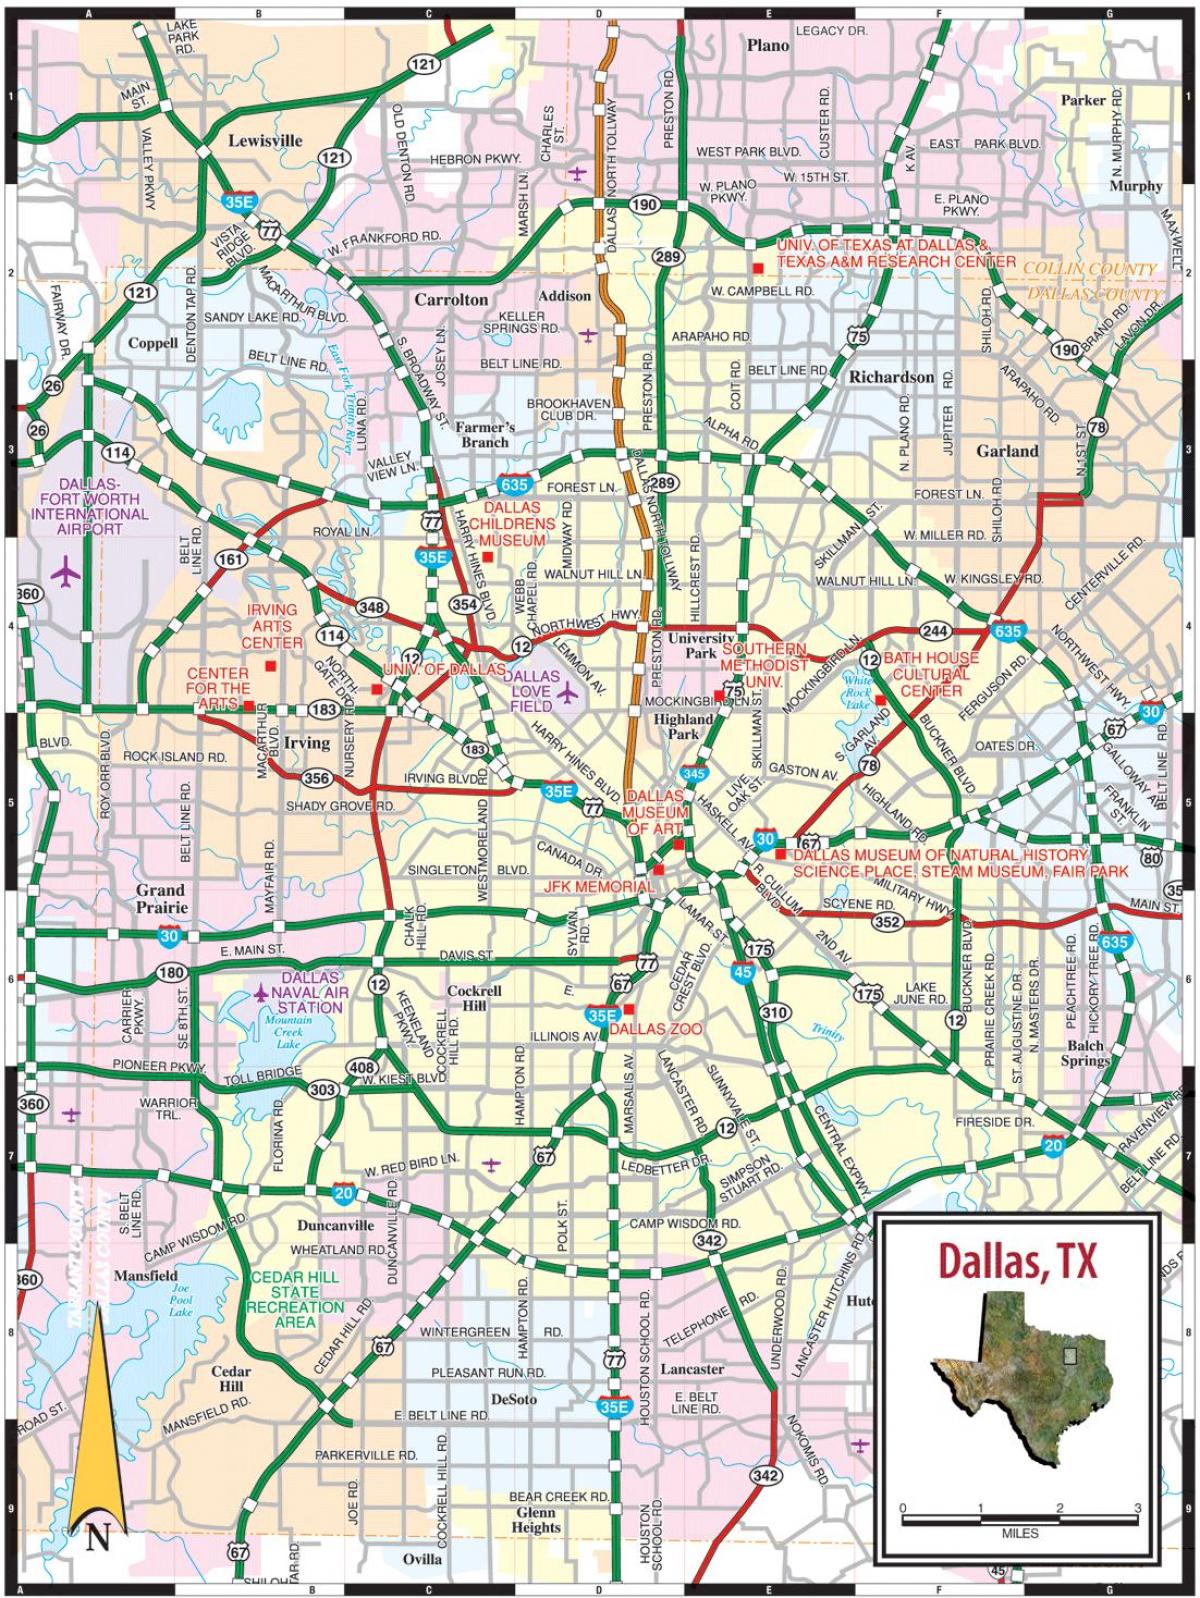 शहर डलास के नक्शे